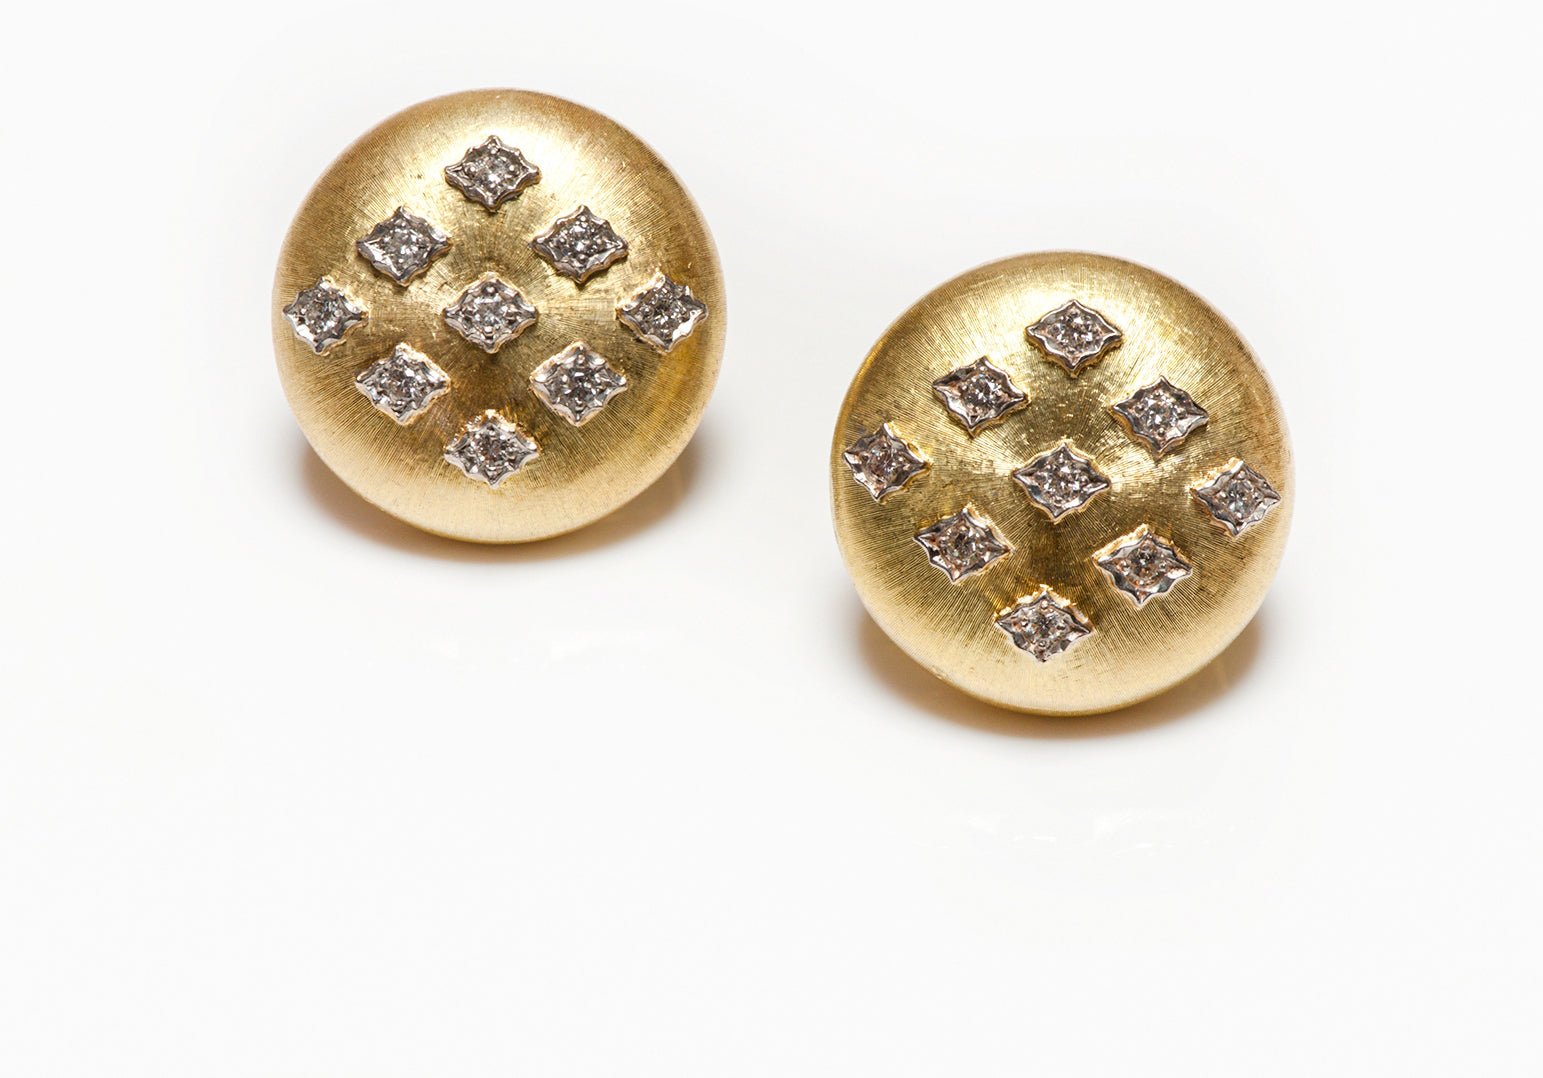 Vintage Buccellati Macri 18K Yellow Gold Diamond Earrings